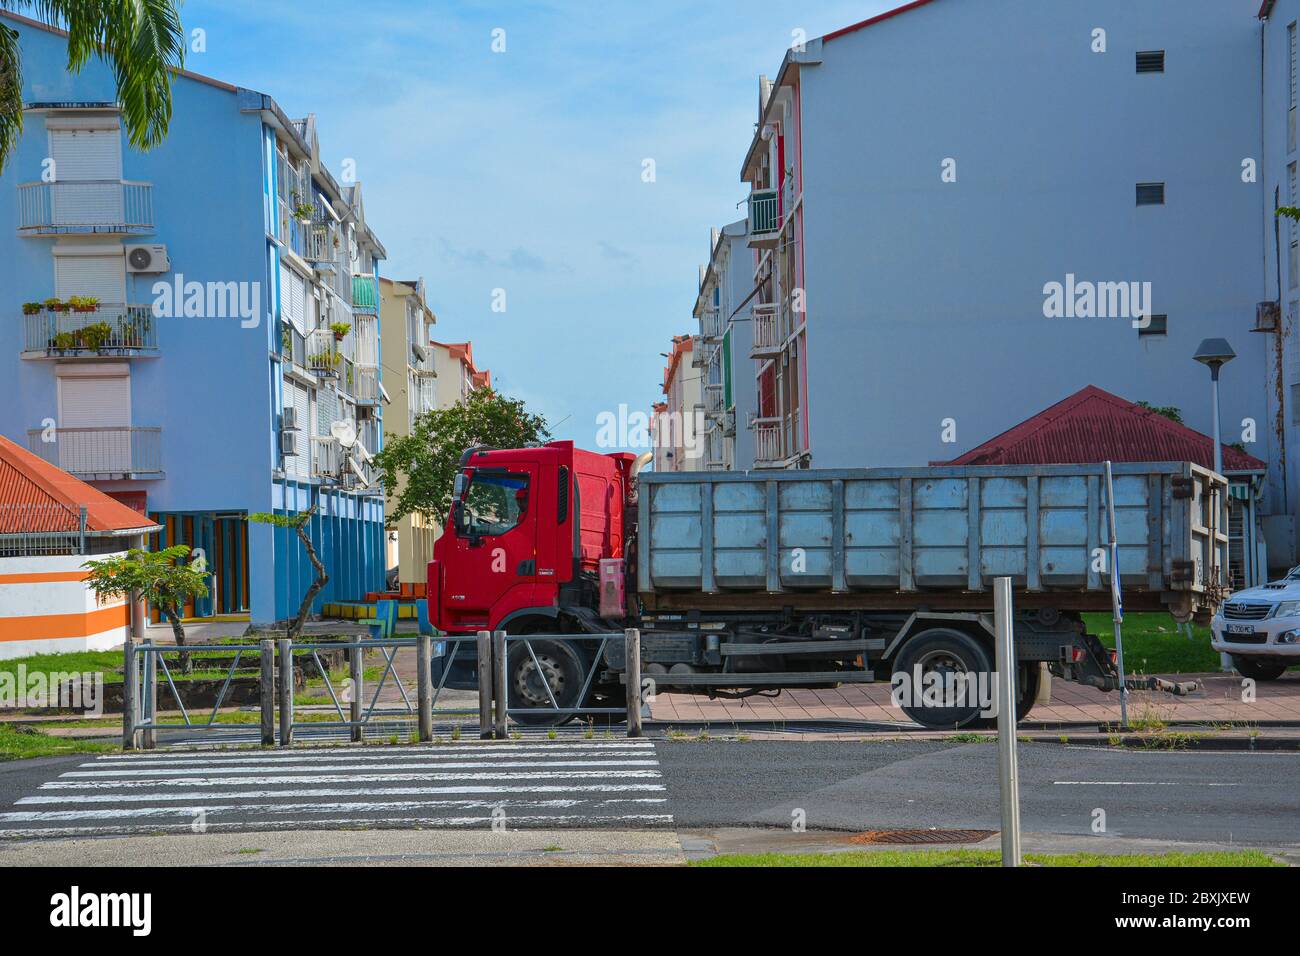 Point-a-Pitre, Guadeloupe - 17 septembre 2018 : le chauffeur a garé un camion avec cabine rouge sur le trottoir près d'une traversée piétonne entre les maisons bleues Banque D'Images